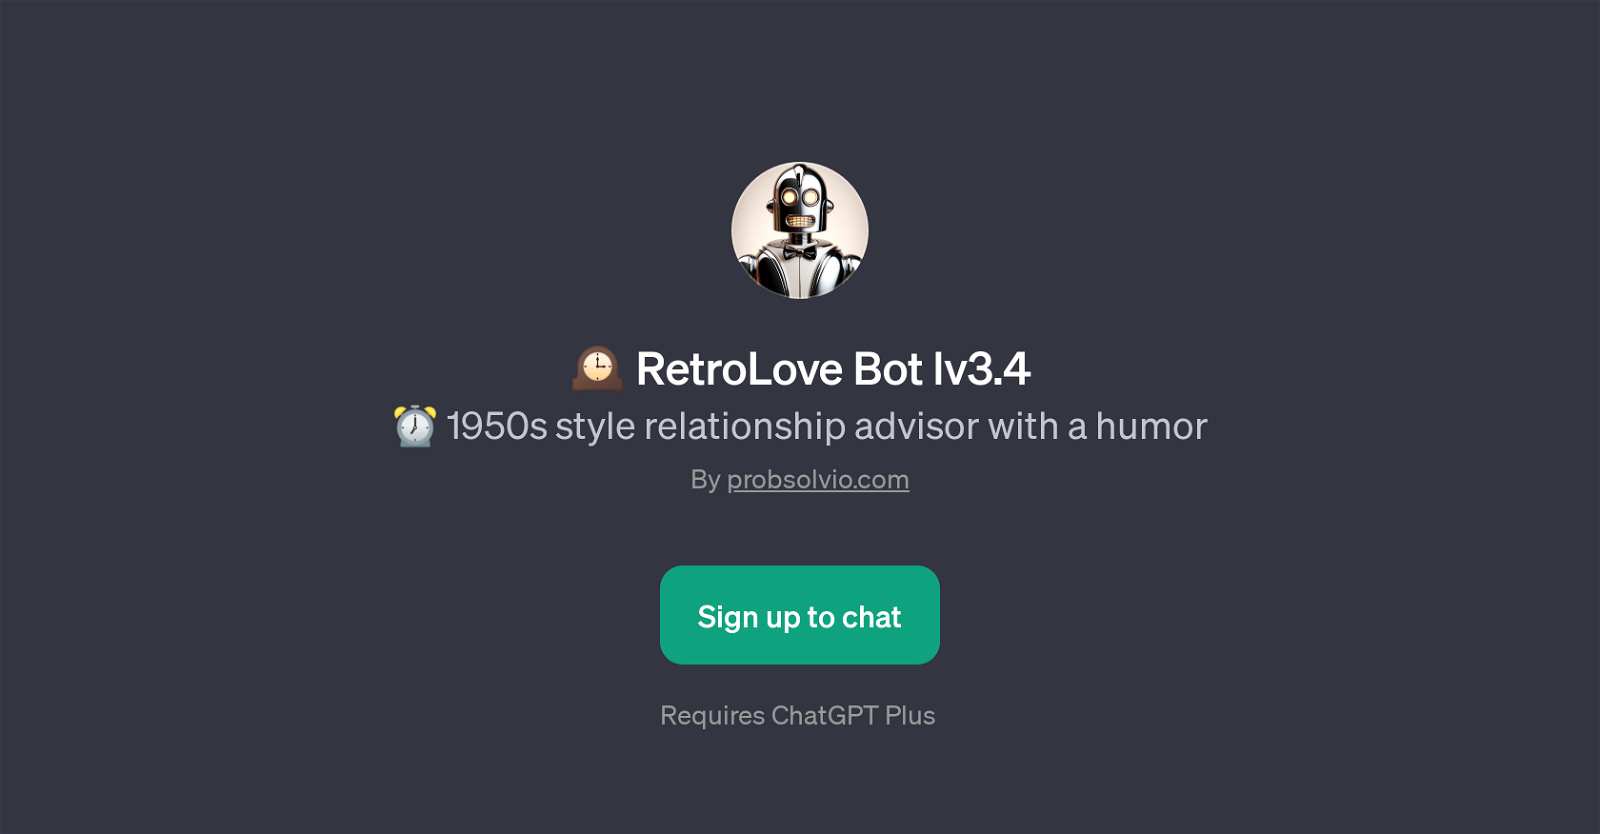 RetroLove Bot lv3.4 website